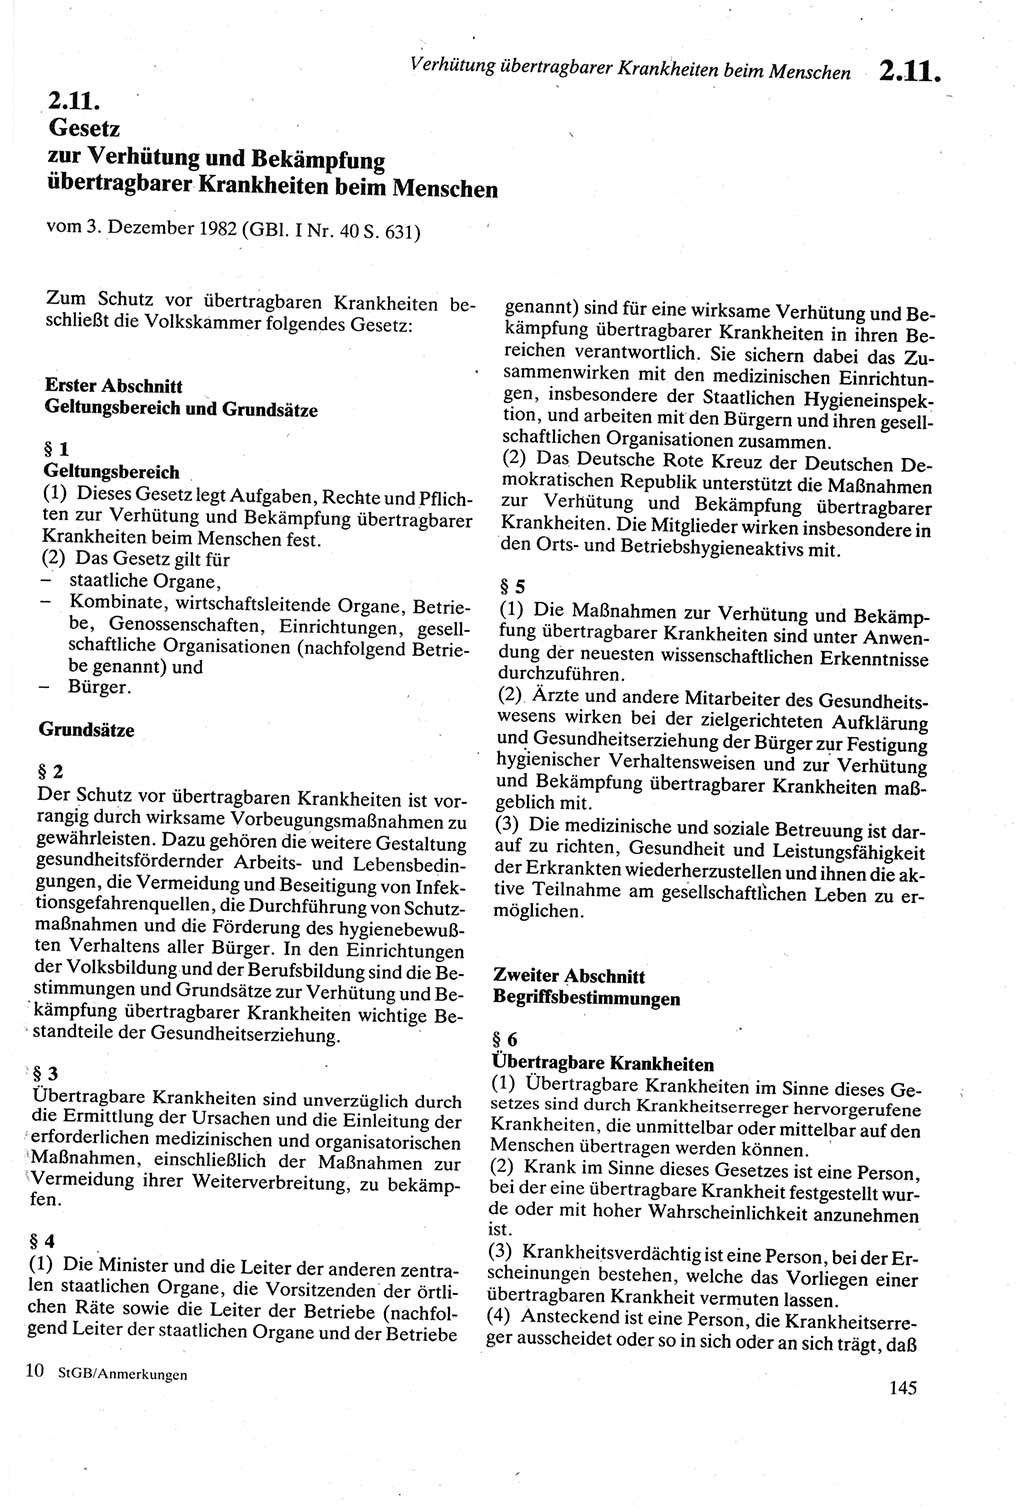 Strafgesetzbuch (StGB) der Deutschen Demokratischen Republik (DDR) sowie angrenzende Gesetze und Bestimmungen 1979, Seite 145 (StGB DDR Ges. Best. 1979, S. 145)